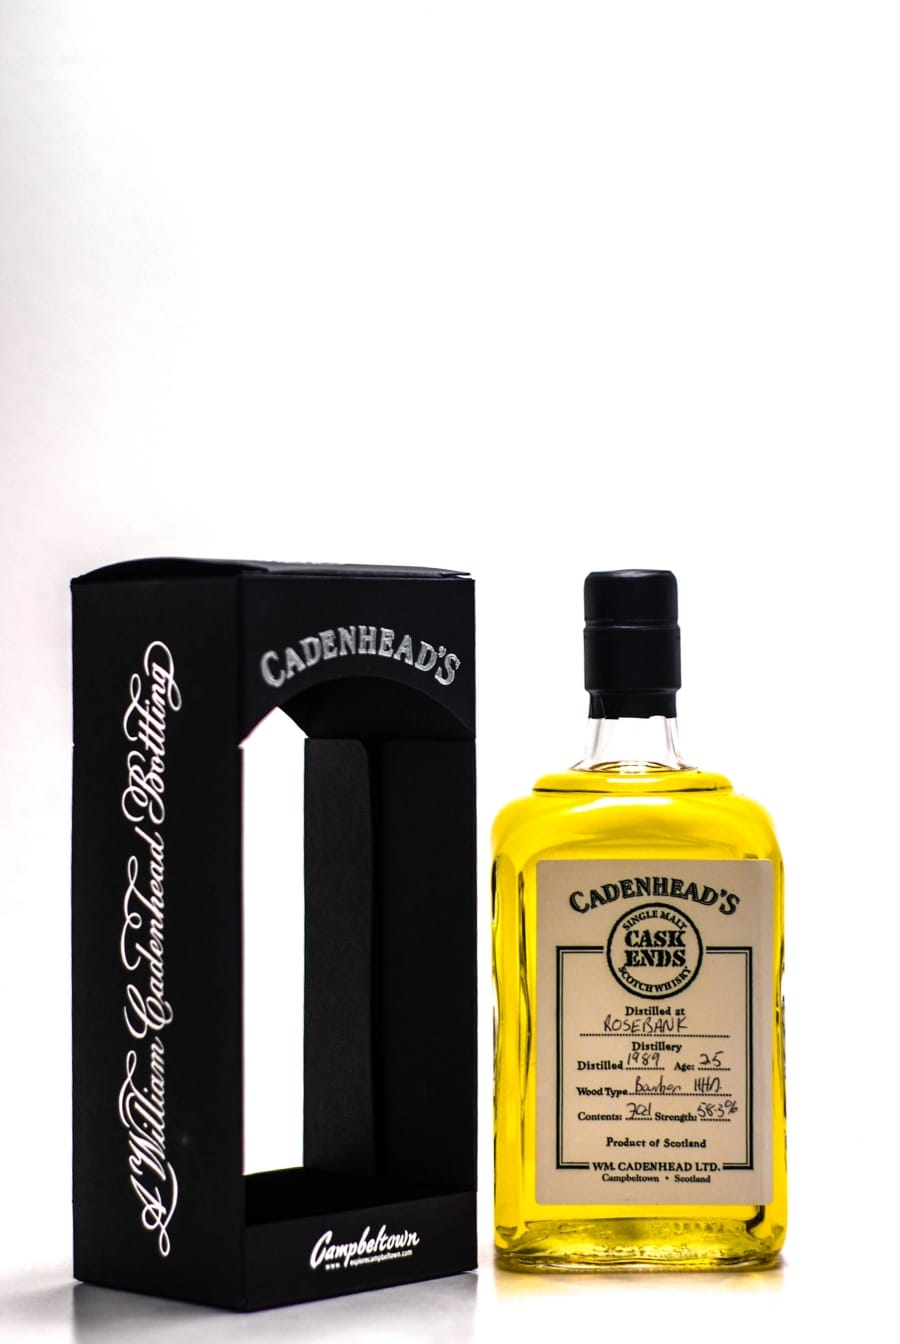 Rosebank - Rosebank 25 Years Old  Cadenhead's Hand-bottled from the cask Distilled 1989 Bottled 22.05.2014 1 Of 30 Bottles Handwritten Label 58.3% 1989 In Original Container